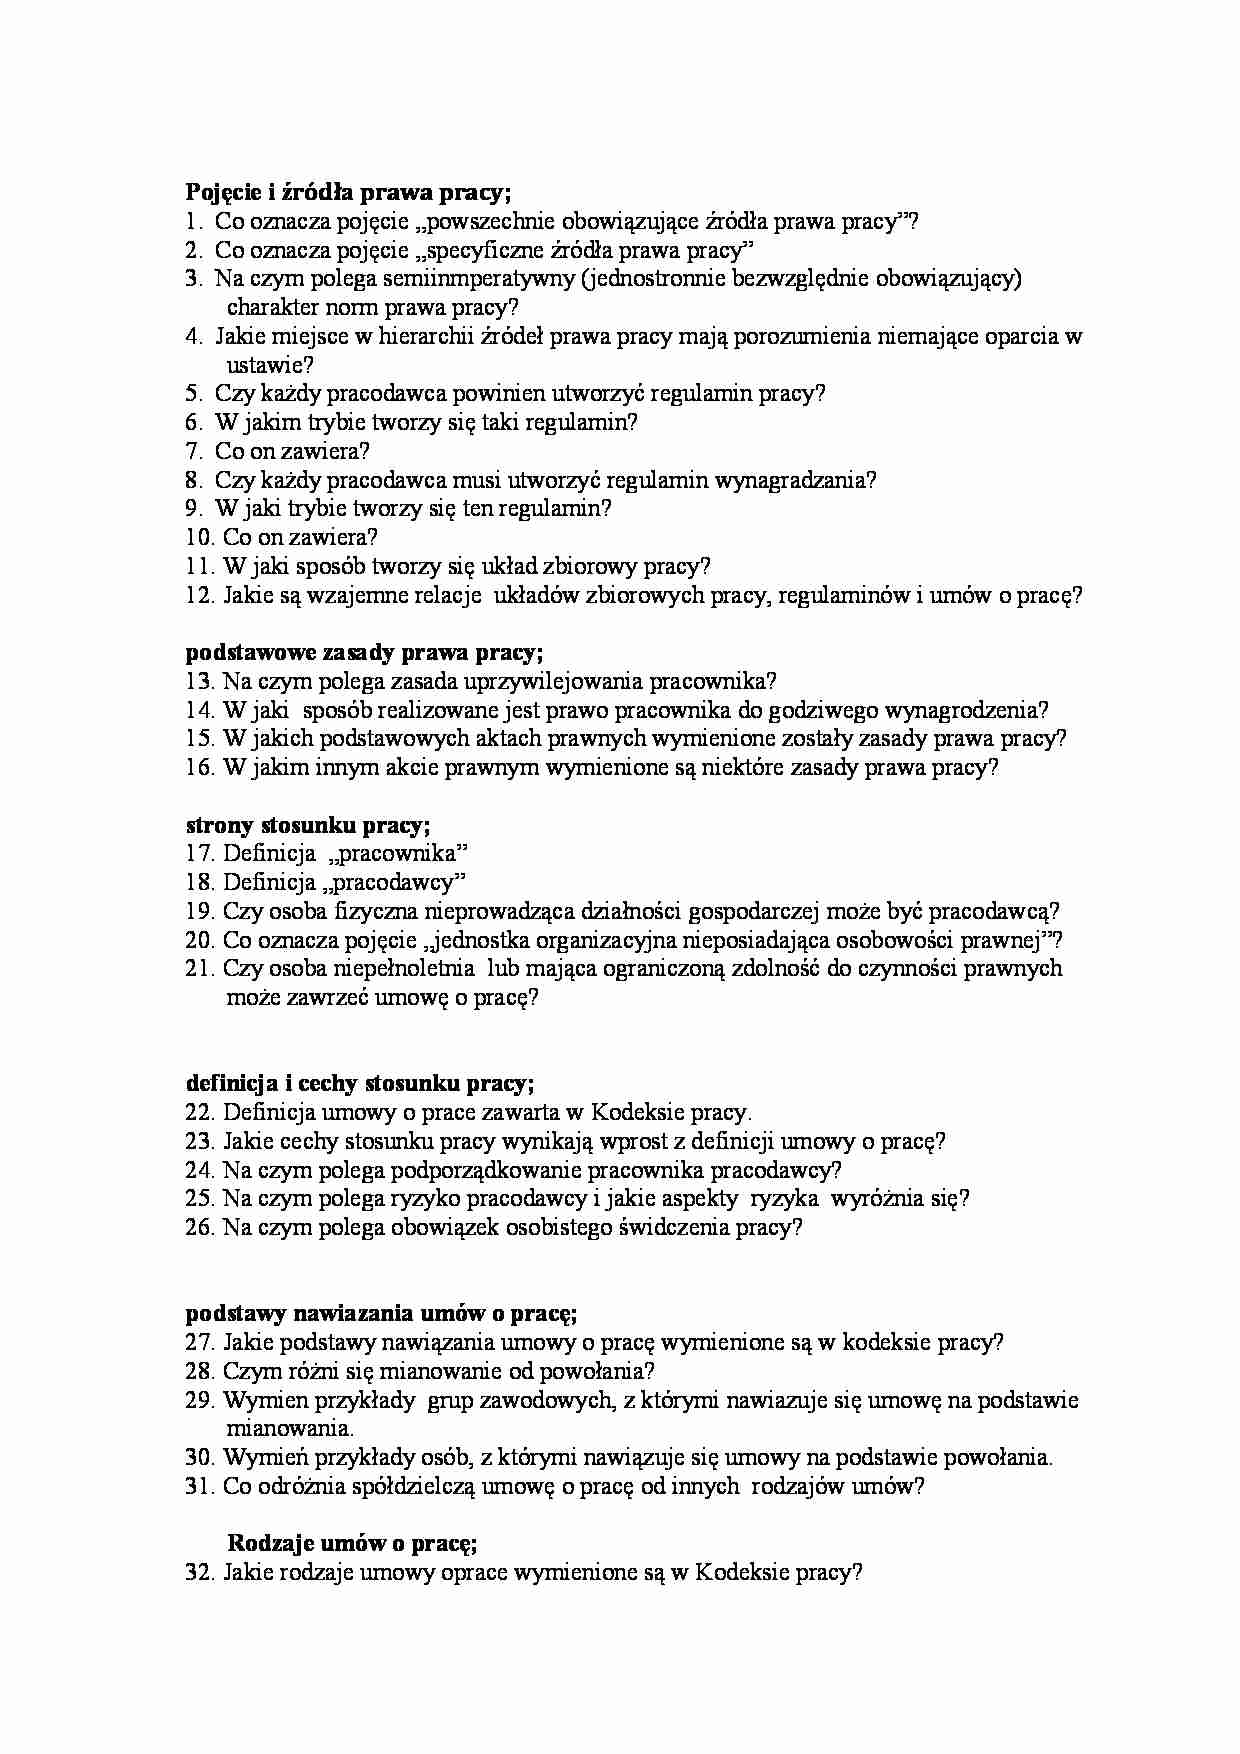 Pytania egzamin - źródla prawa pracy - strona 1